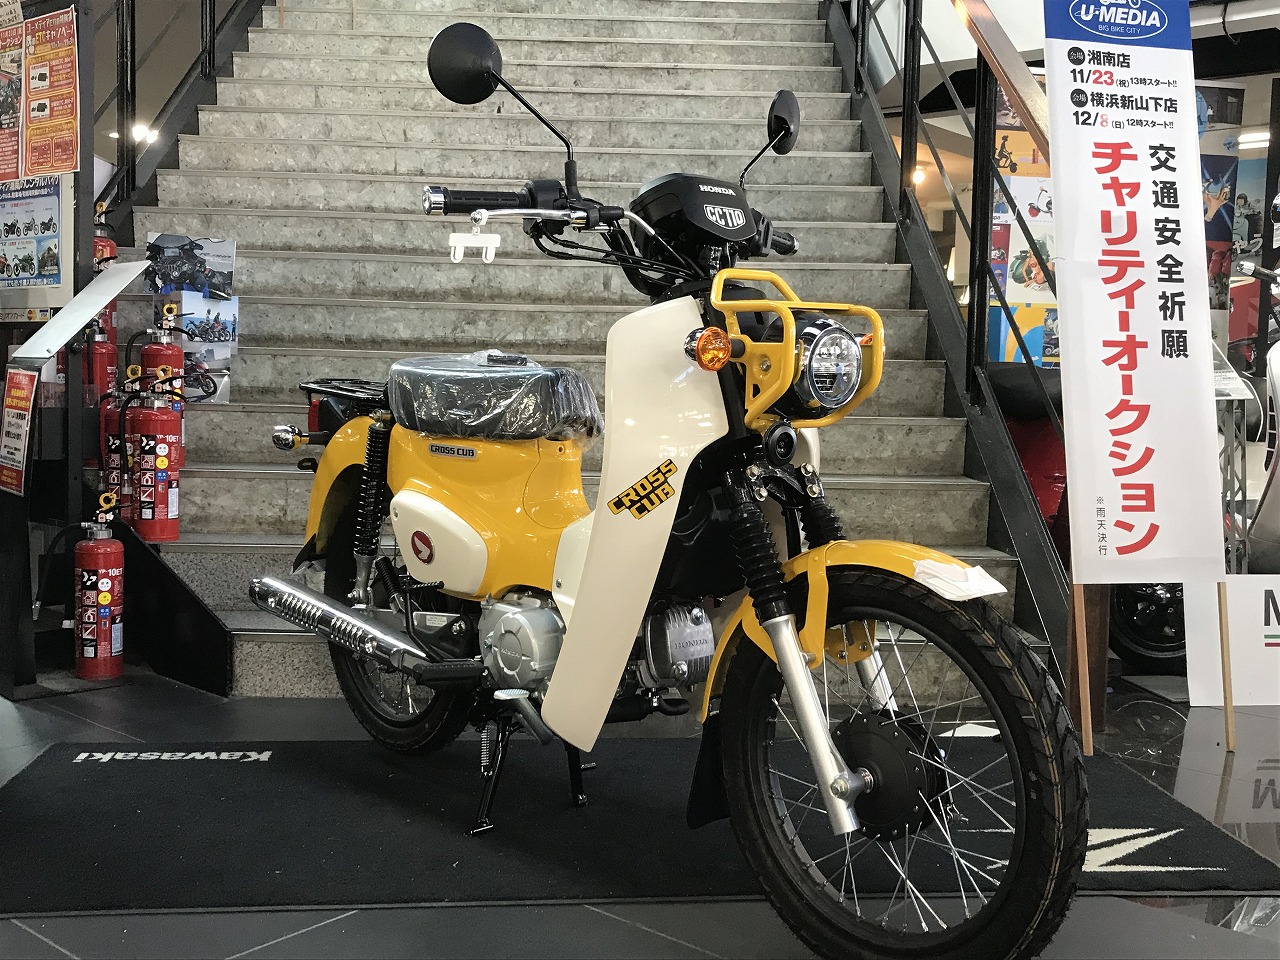 クロスカブレッグシールド第2弾 最新情報 U Media ユーメディア 中古 バイク 新車バイク探しの決定版 神奈川 東京でバイク探すならユーメディア